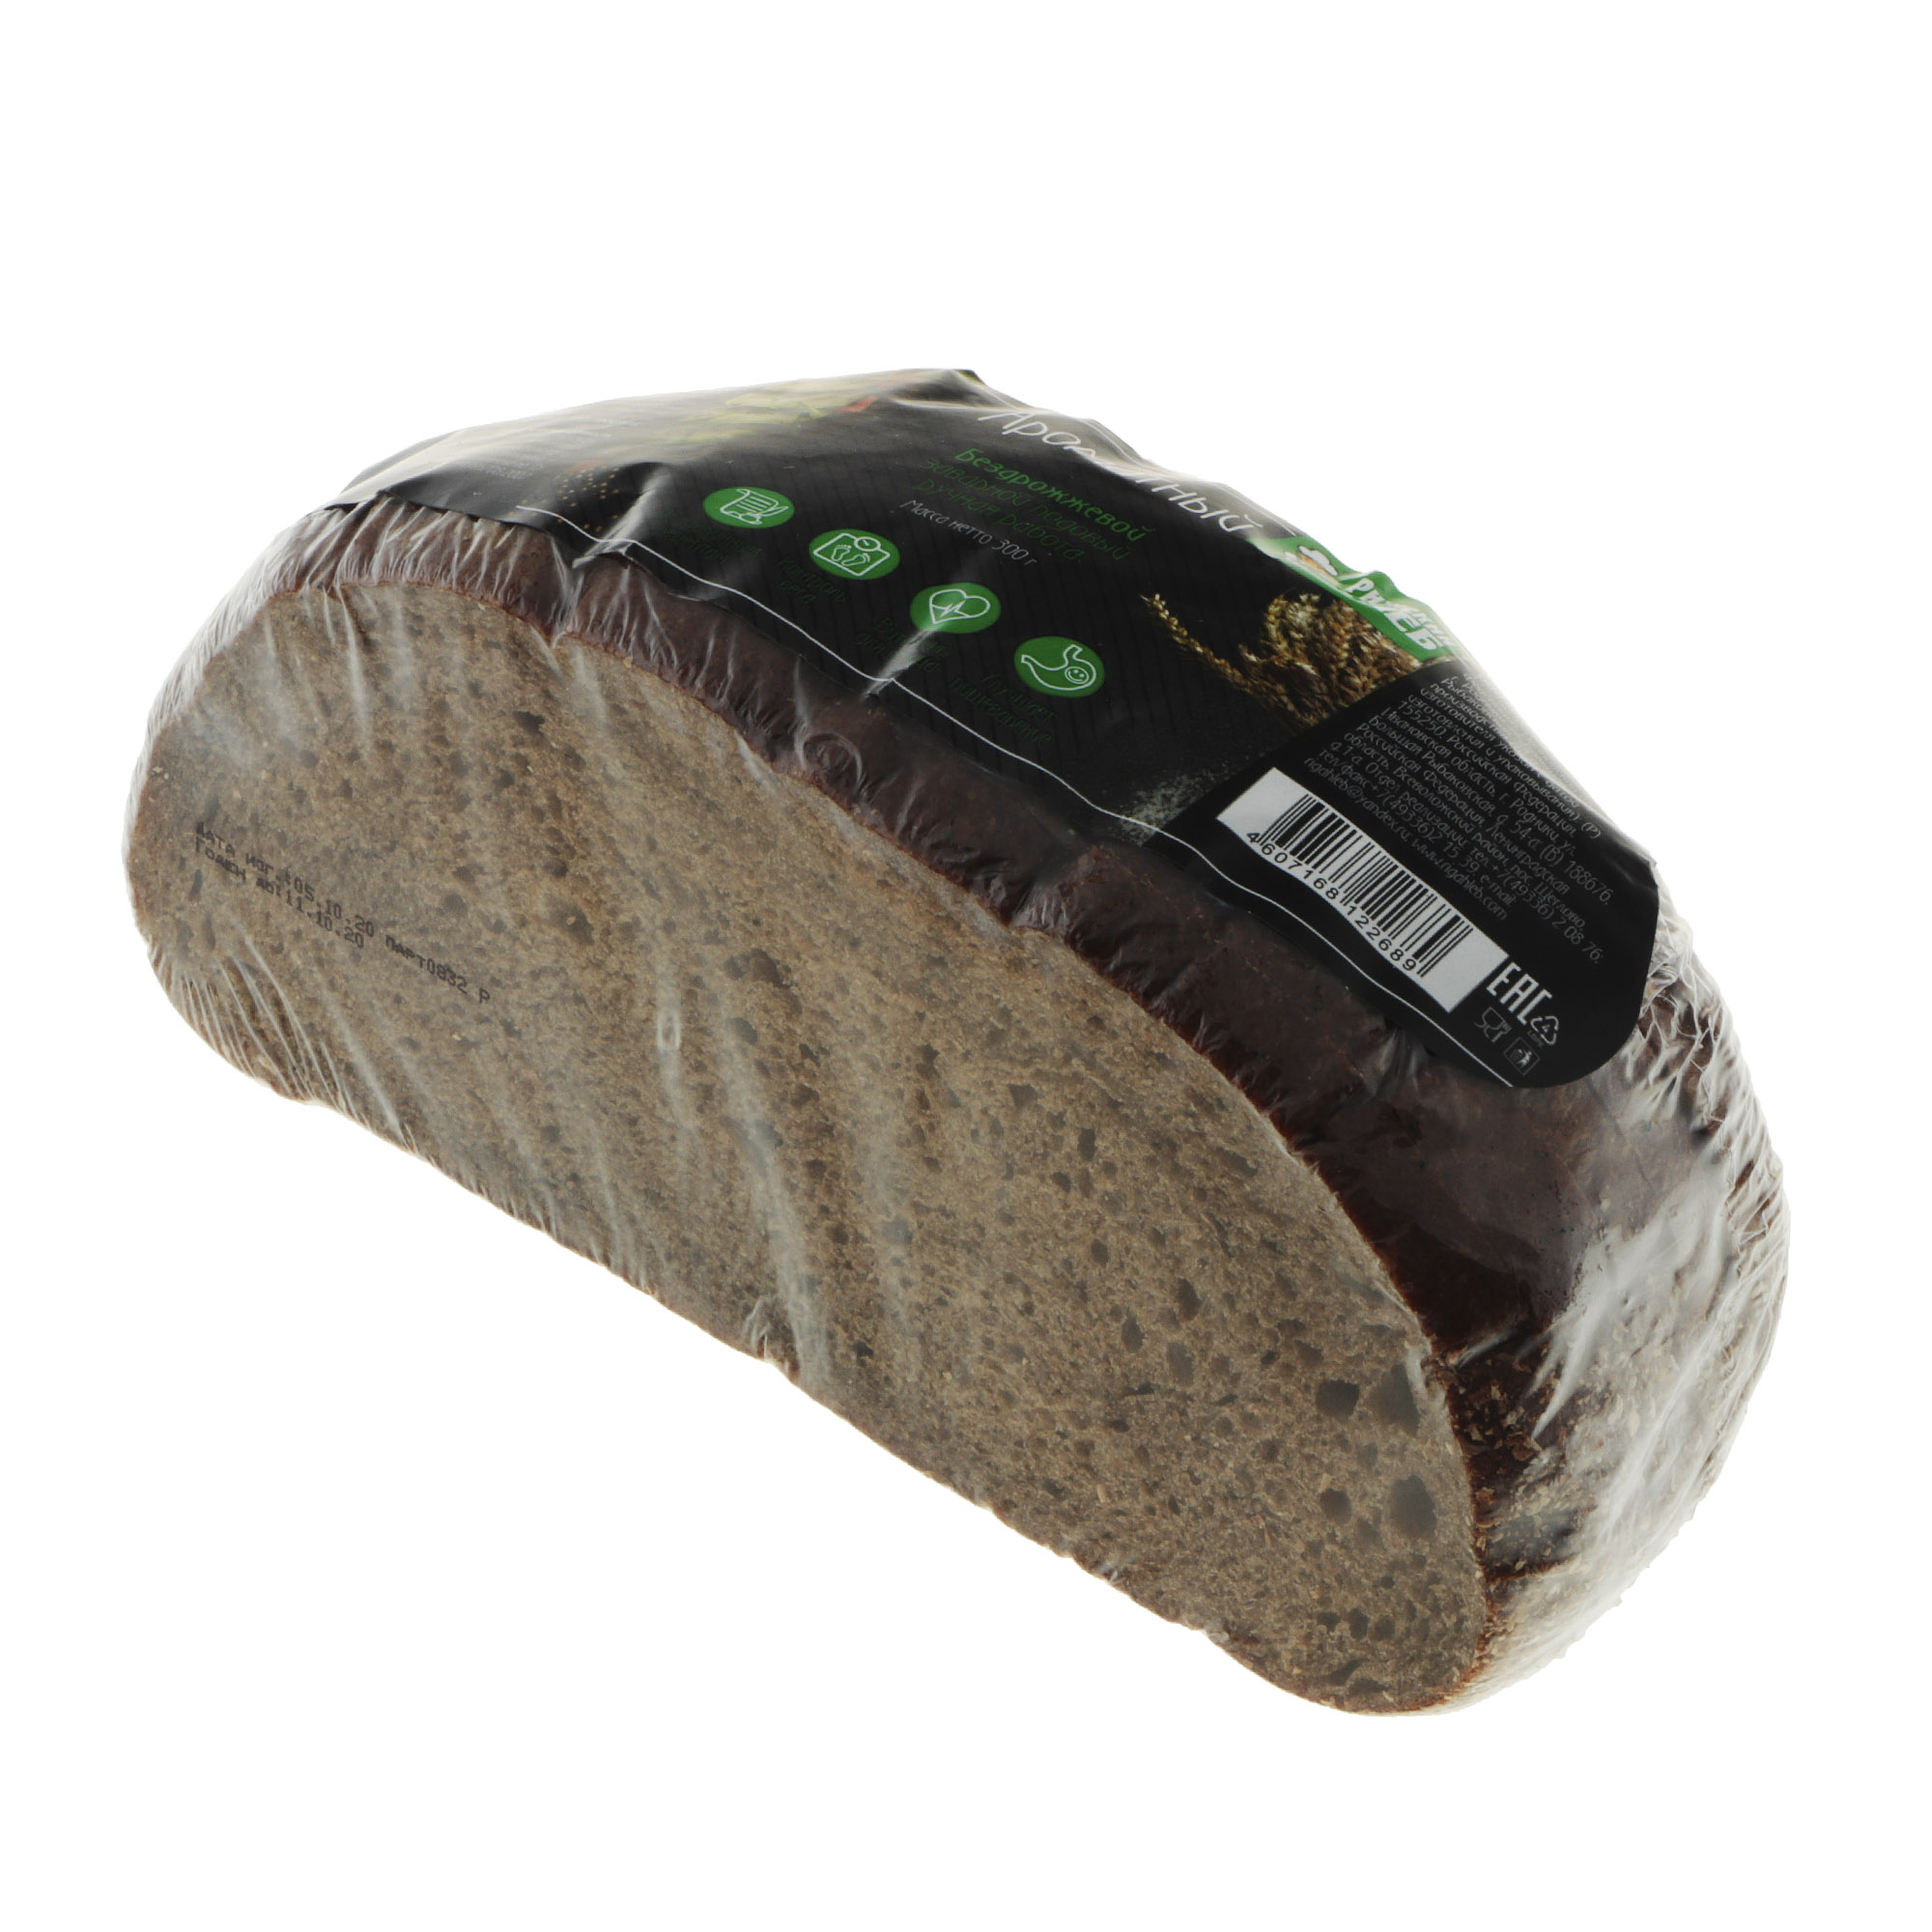 Хлеб Рижский хлеб ароматный 300 г хлеб рижский хлеб полбяной цельнозерновой 270 г